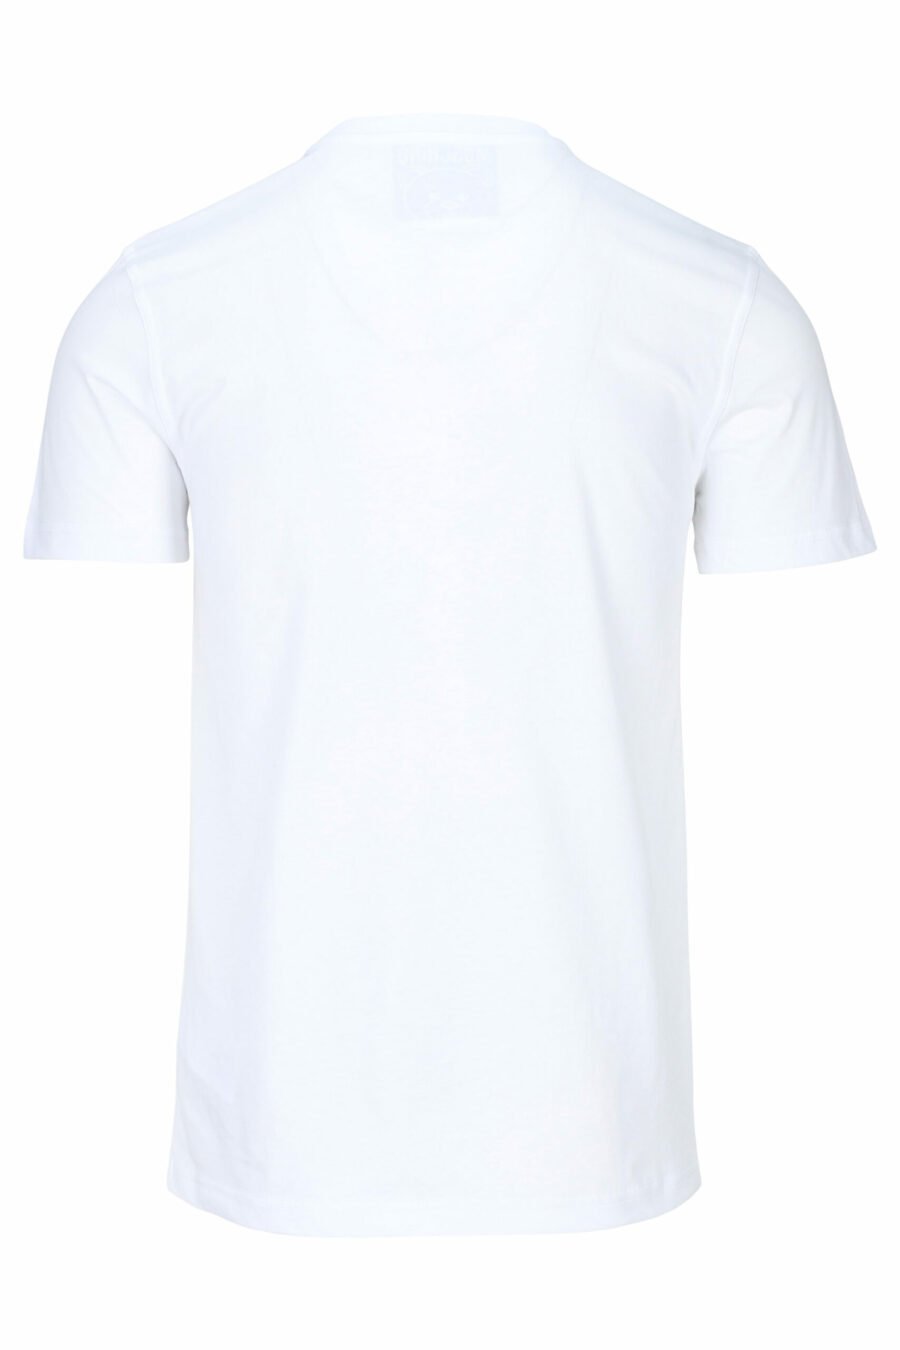 T-shirt blanc avec "teddy" sur mesure maxilogo - 667113108100 1 à l'échelle